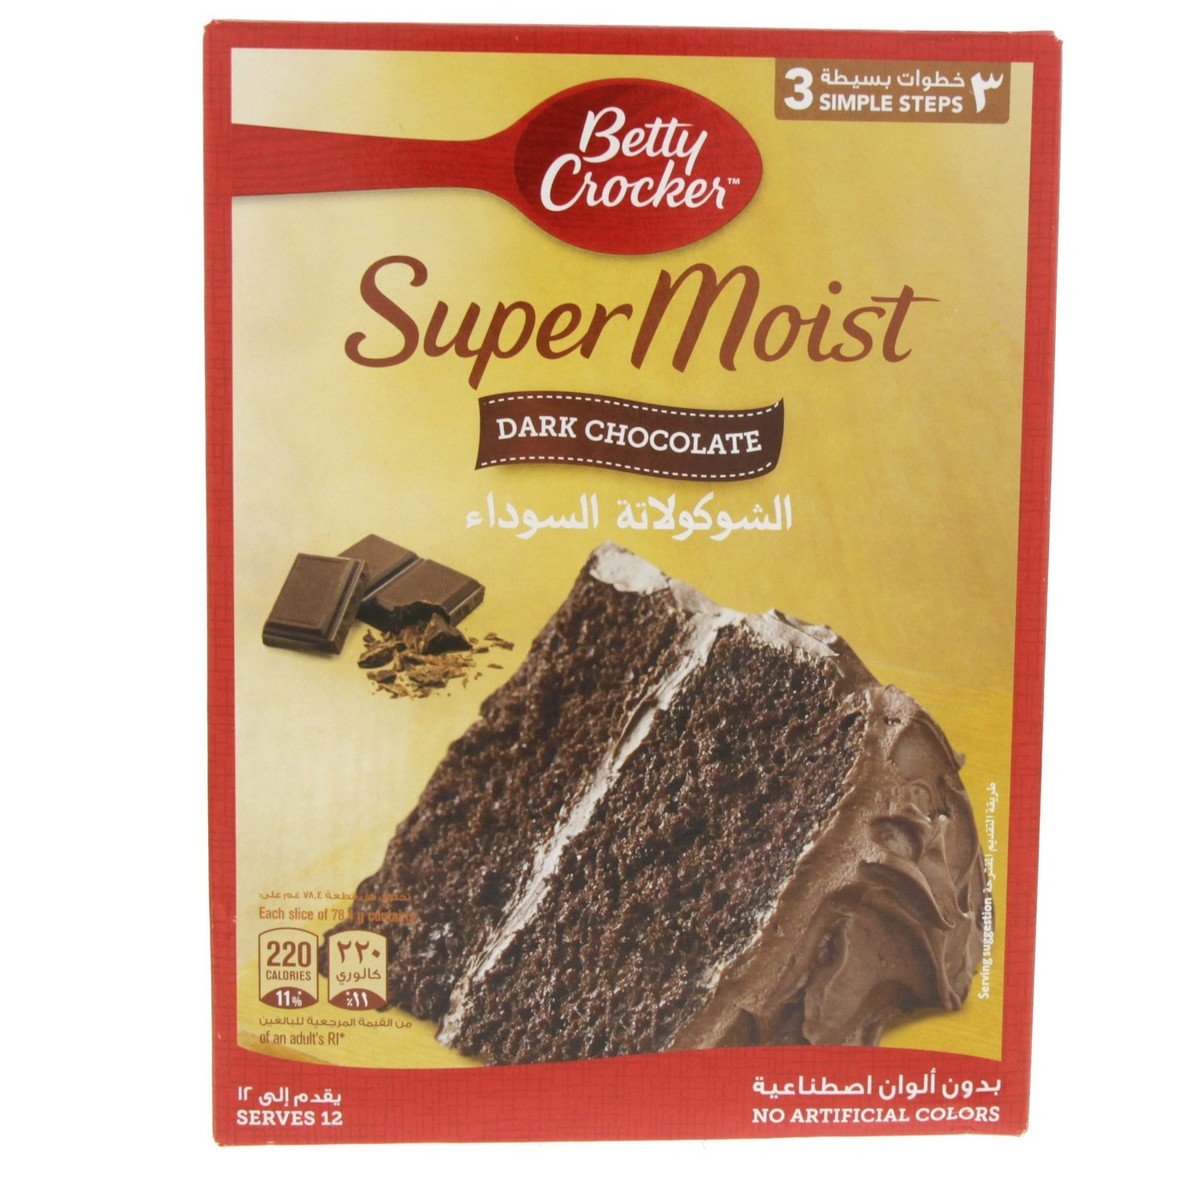 اشتري قم بشراء بيتي كروكر خليط كيك فائق الهشاشة بنكهة الشوكولاتة الداكنة ٥٠٠ جم Online at Best Price من الموقع - من لولو هايبر ماركت Cake & Dessert Mixes في السعودية